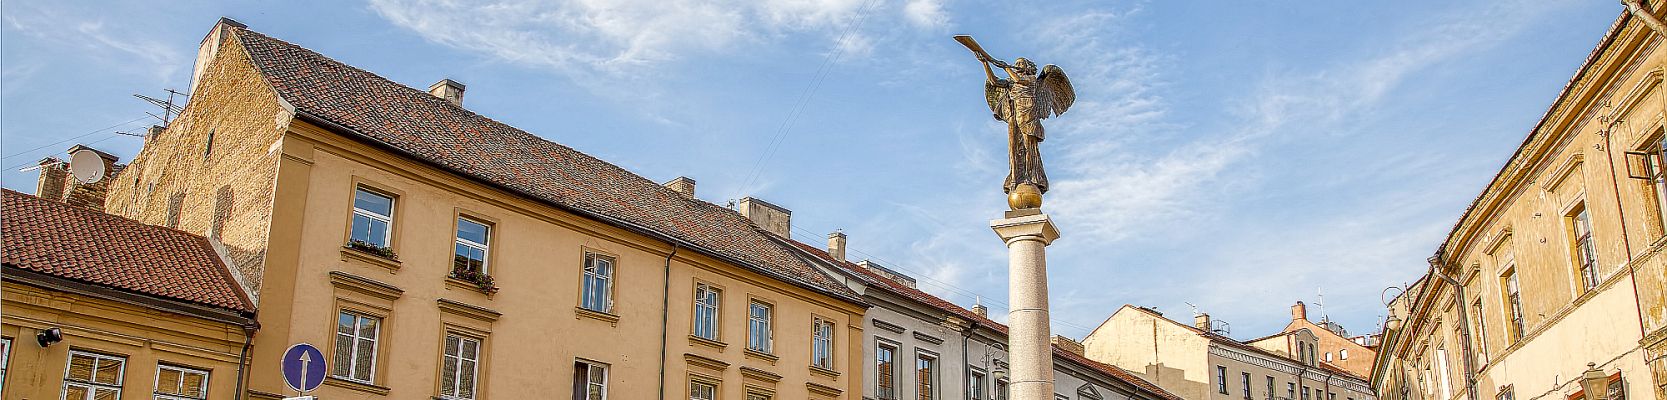 Engel von Uzupis - Städtereise Vilnius